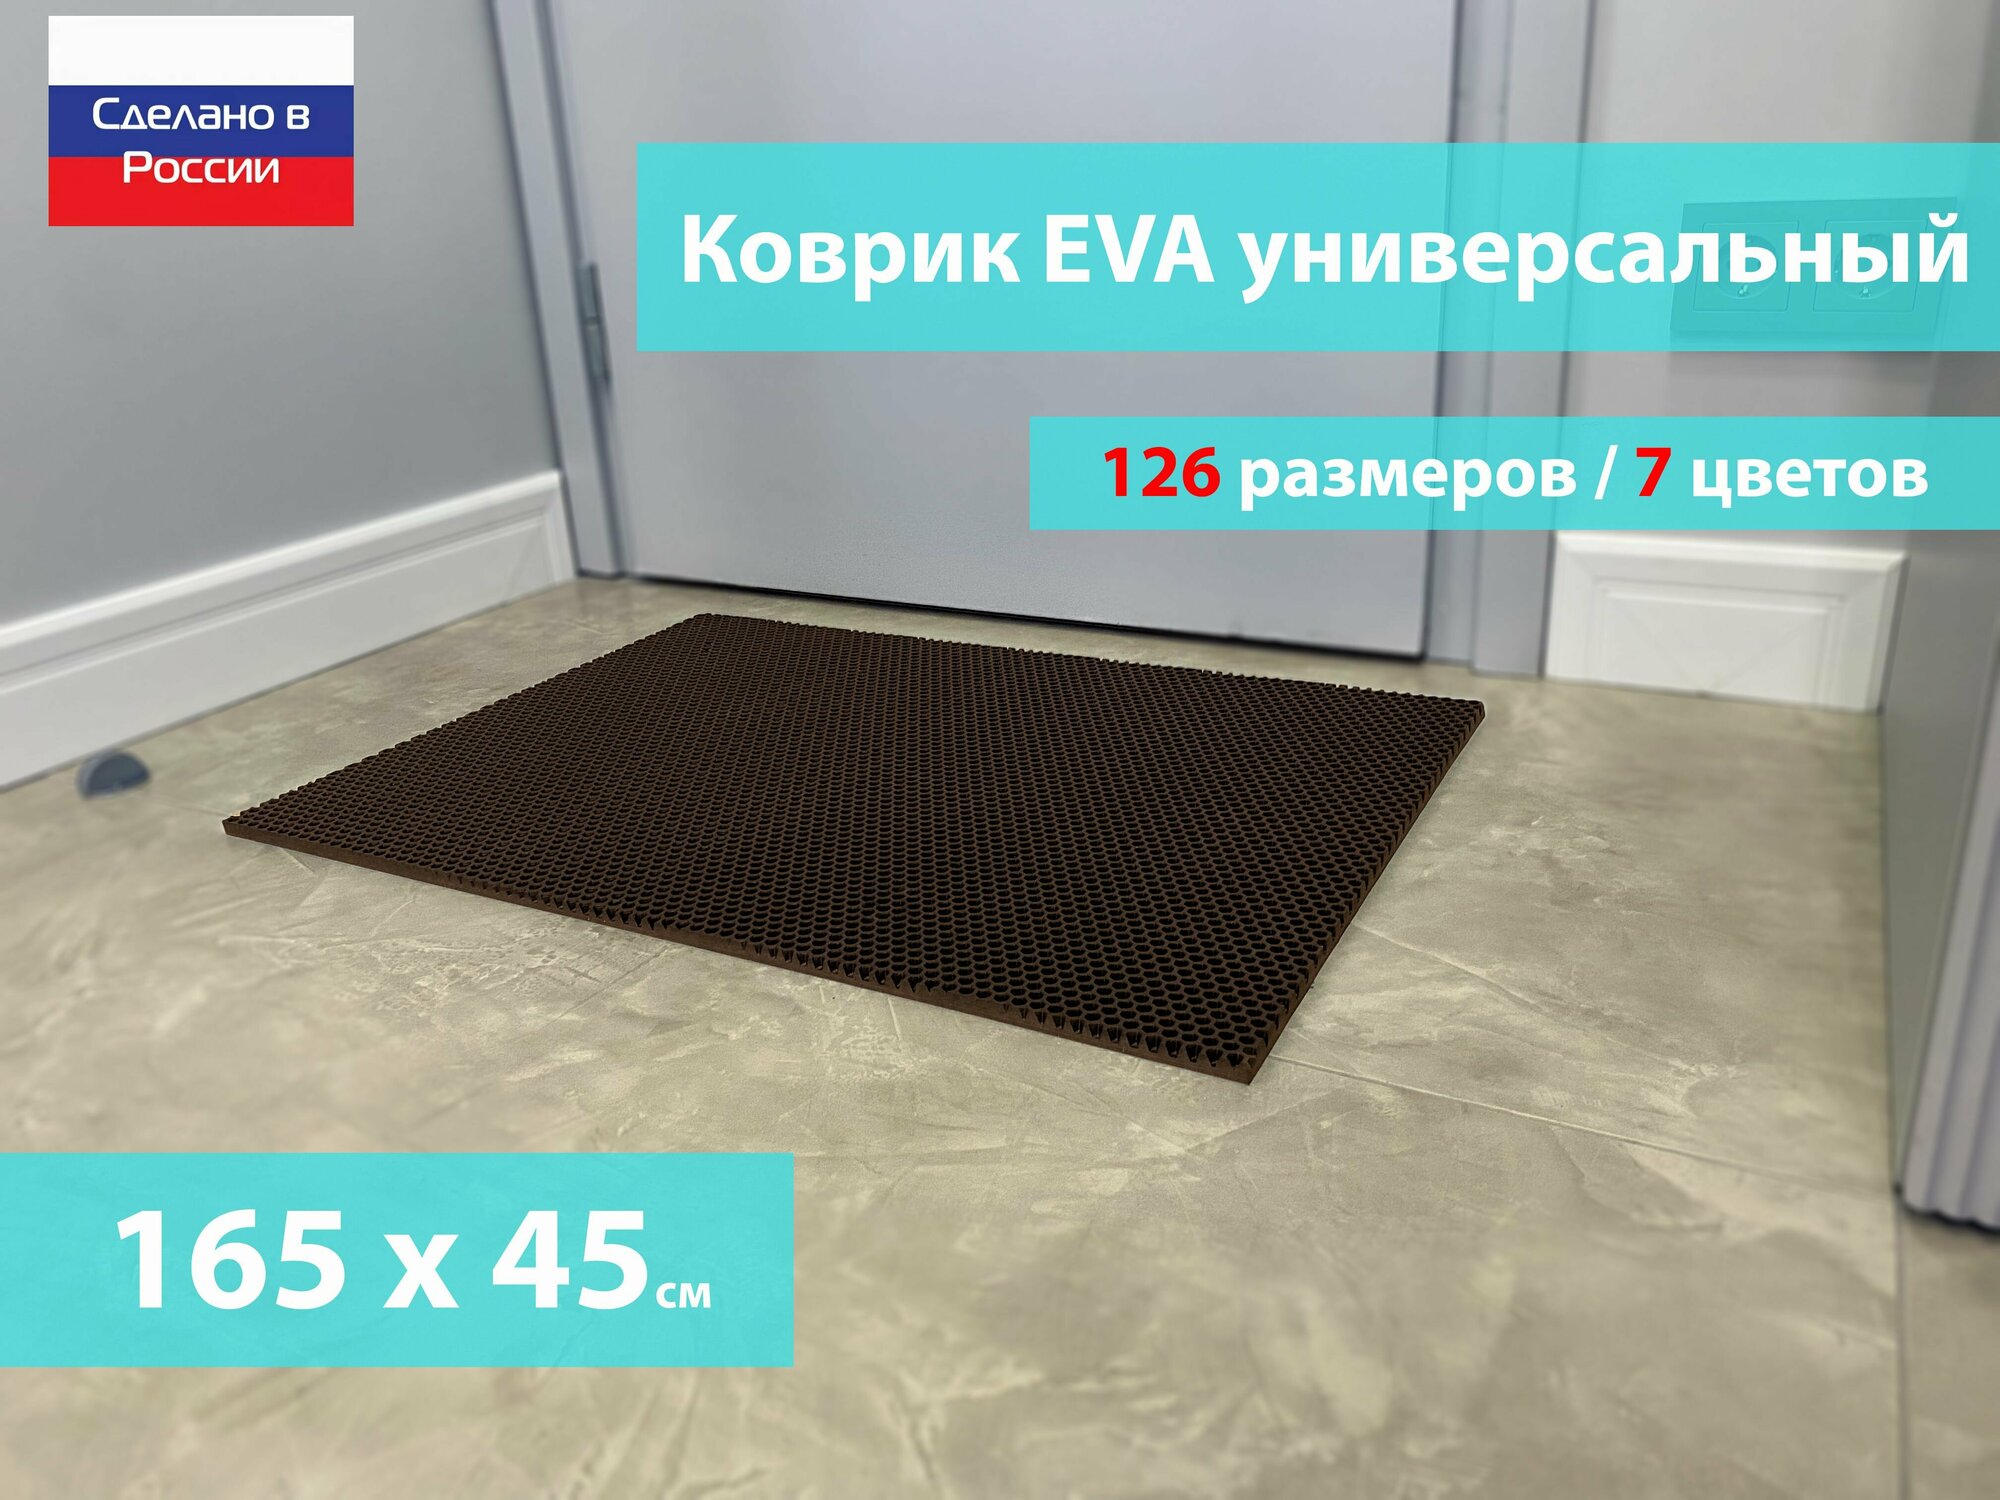 Коврик придверный EVA (ЕВА) в прихожую для обуви / Ковер ЭВА на пол перед дверью/ коричневый / размер 165 х 45 см